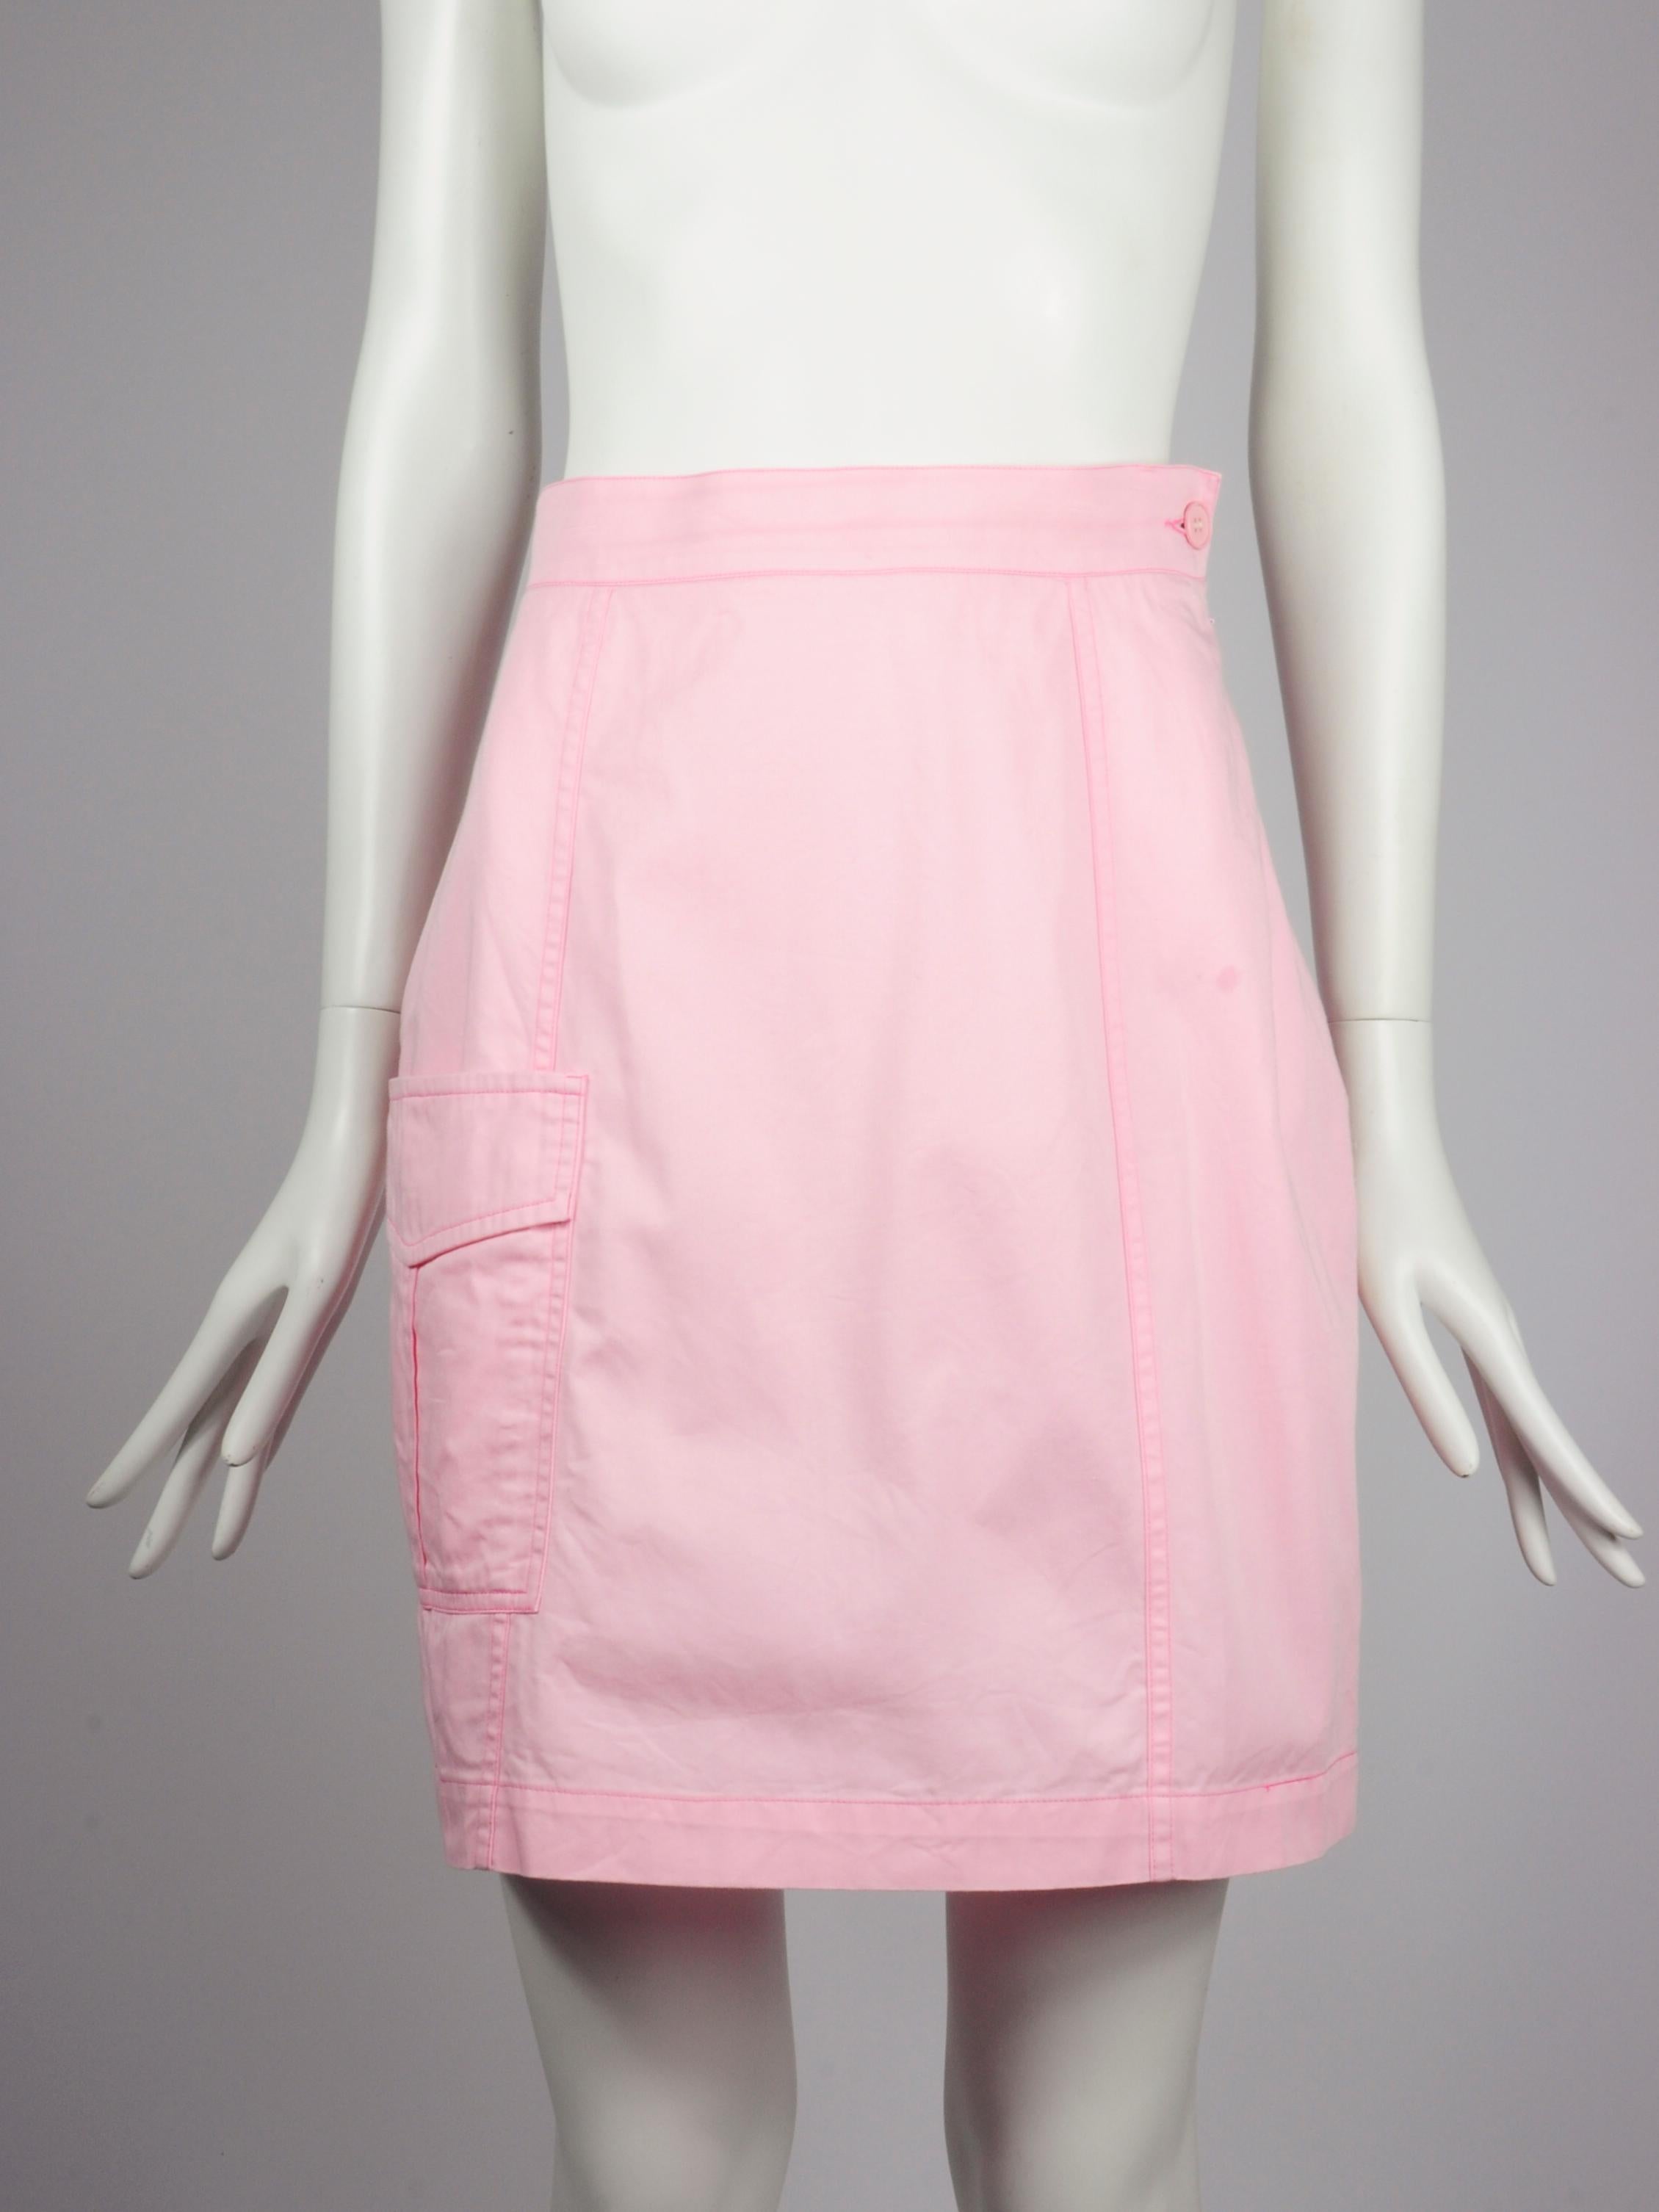 Yves Saint Laurent Saharienne Safari Two Piece Skirt Suit Set Pink Pockets 1990s For Sale 10